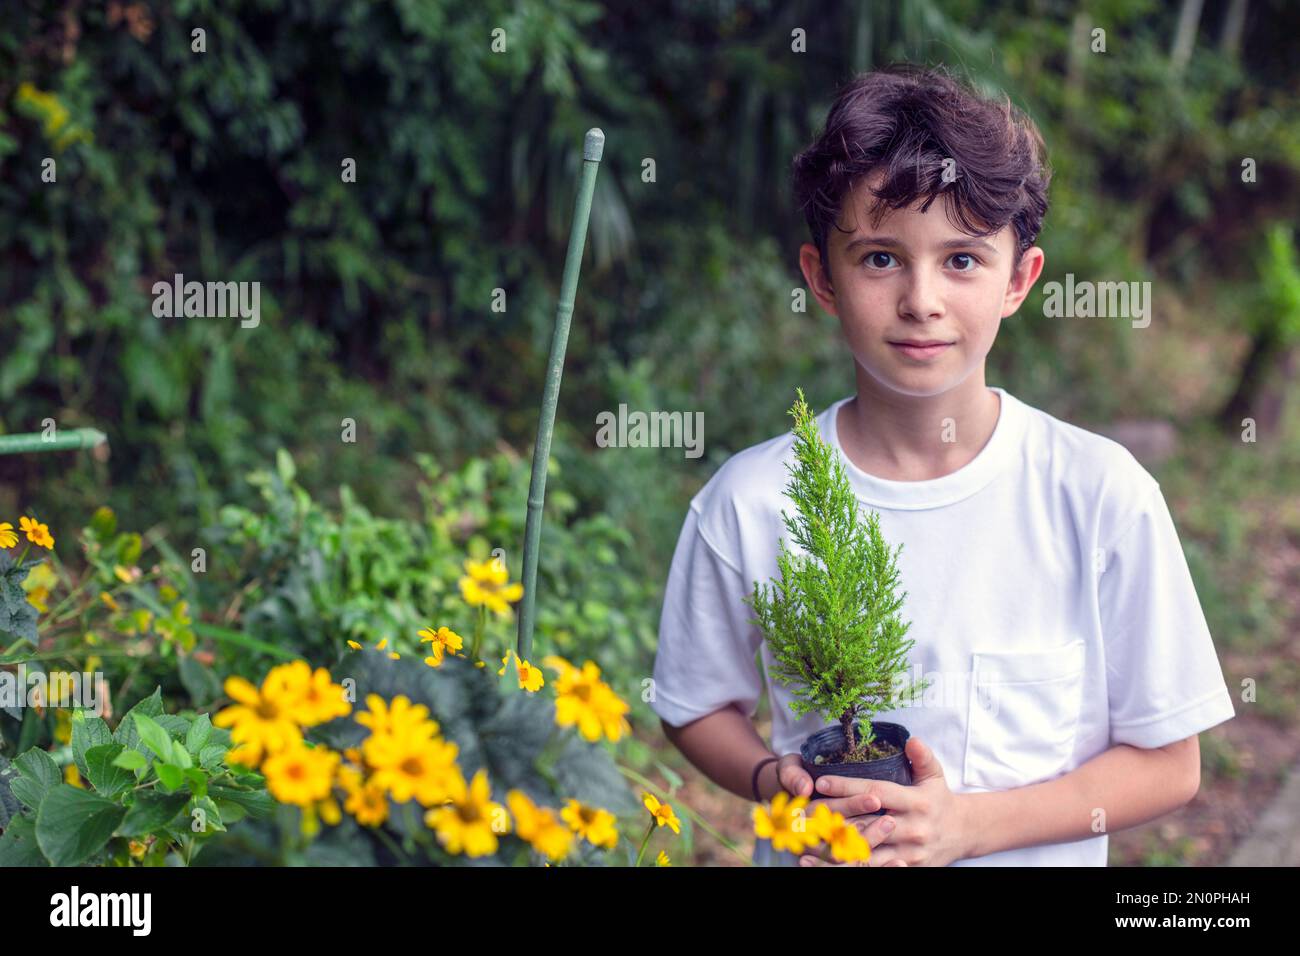 Un ragazzo che tiene un piccolo albero che si insaputa in una pentola, in piedi in un giardino. Foto Stock